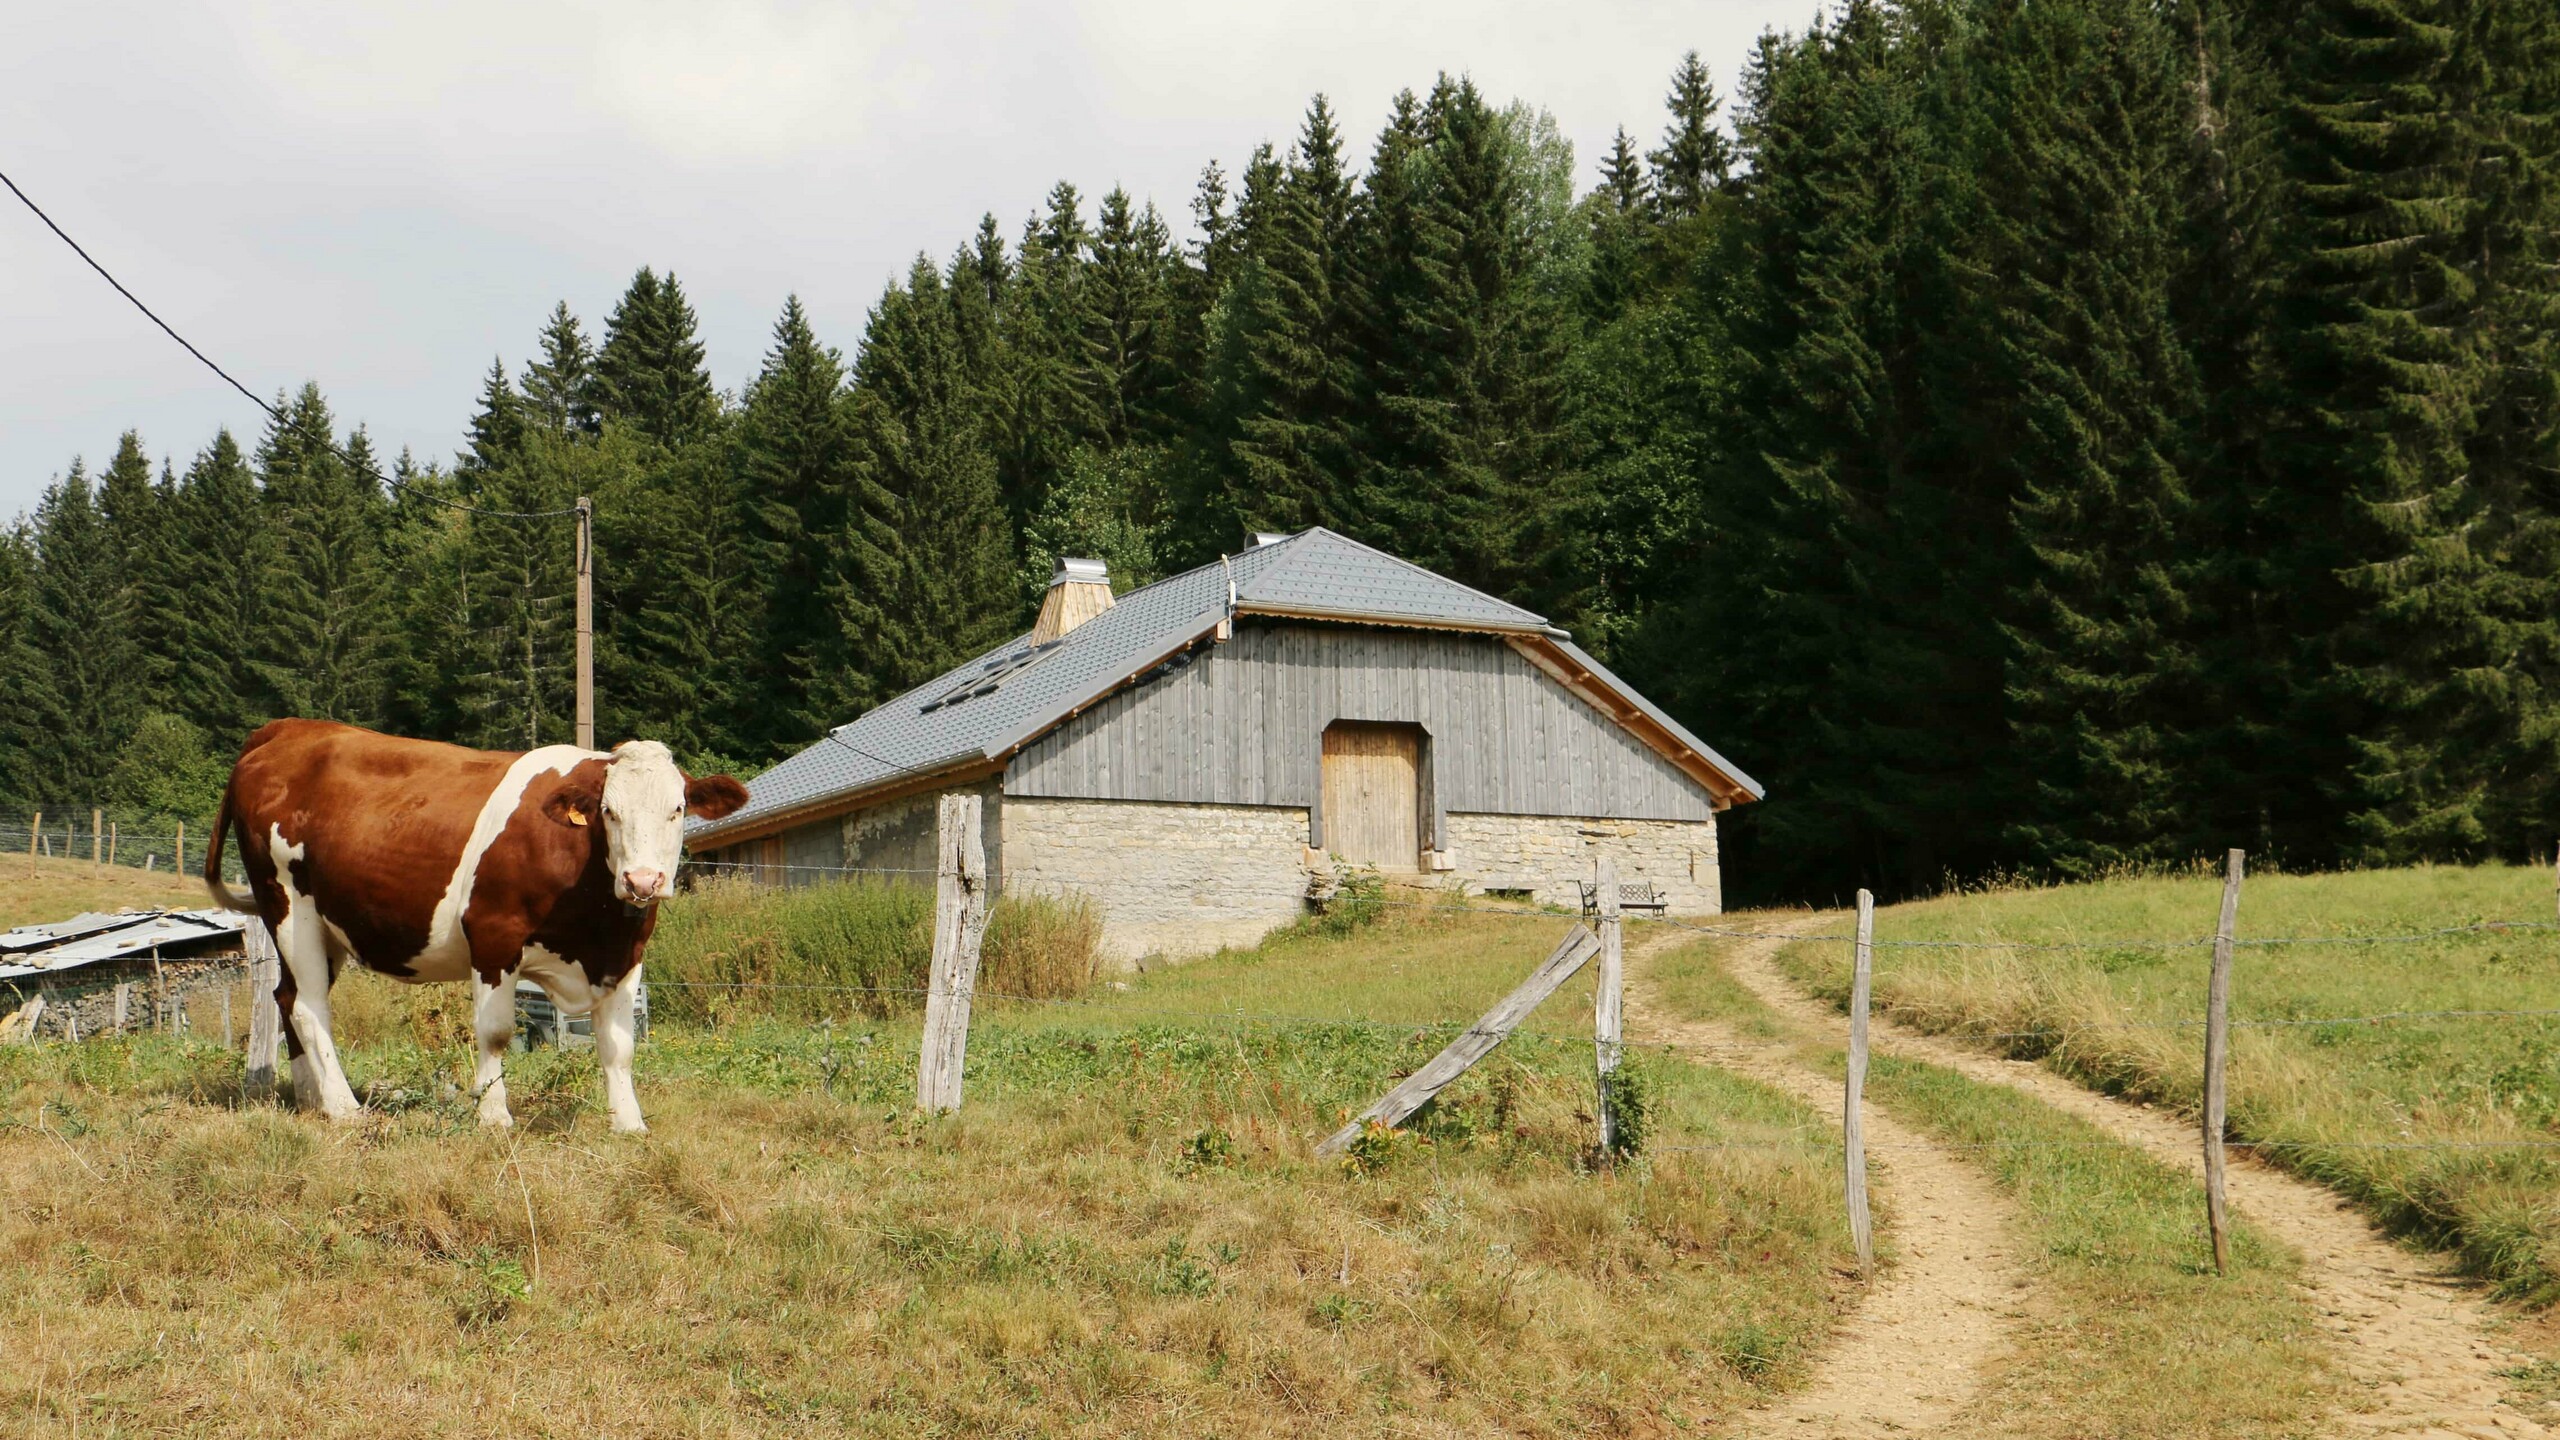 Prise de vue de la nature, avec une vache et en fond un chalet dont la couverture a été rénovée avec les tuiles en aluminium prefa choisies dans la teinte P.10 gris pierre